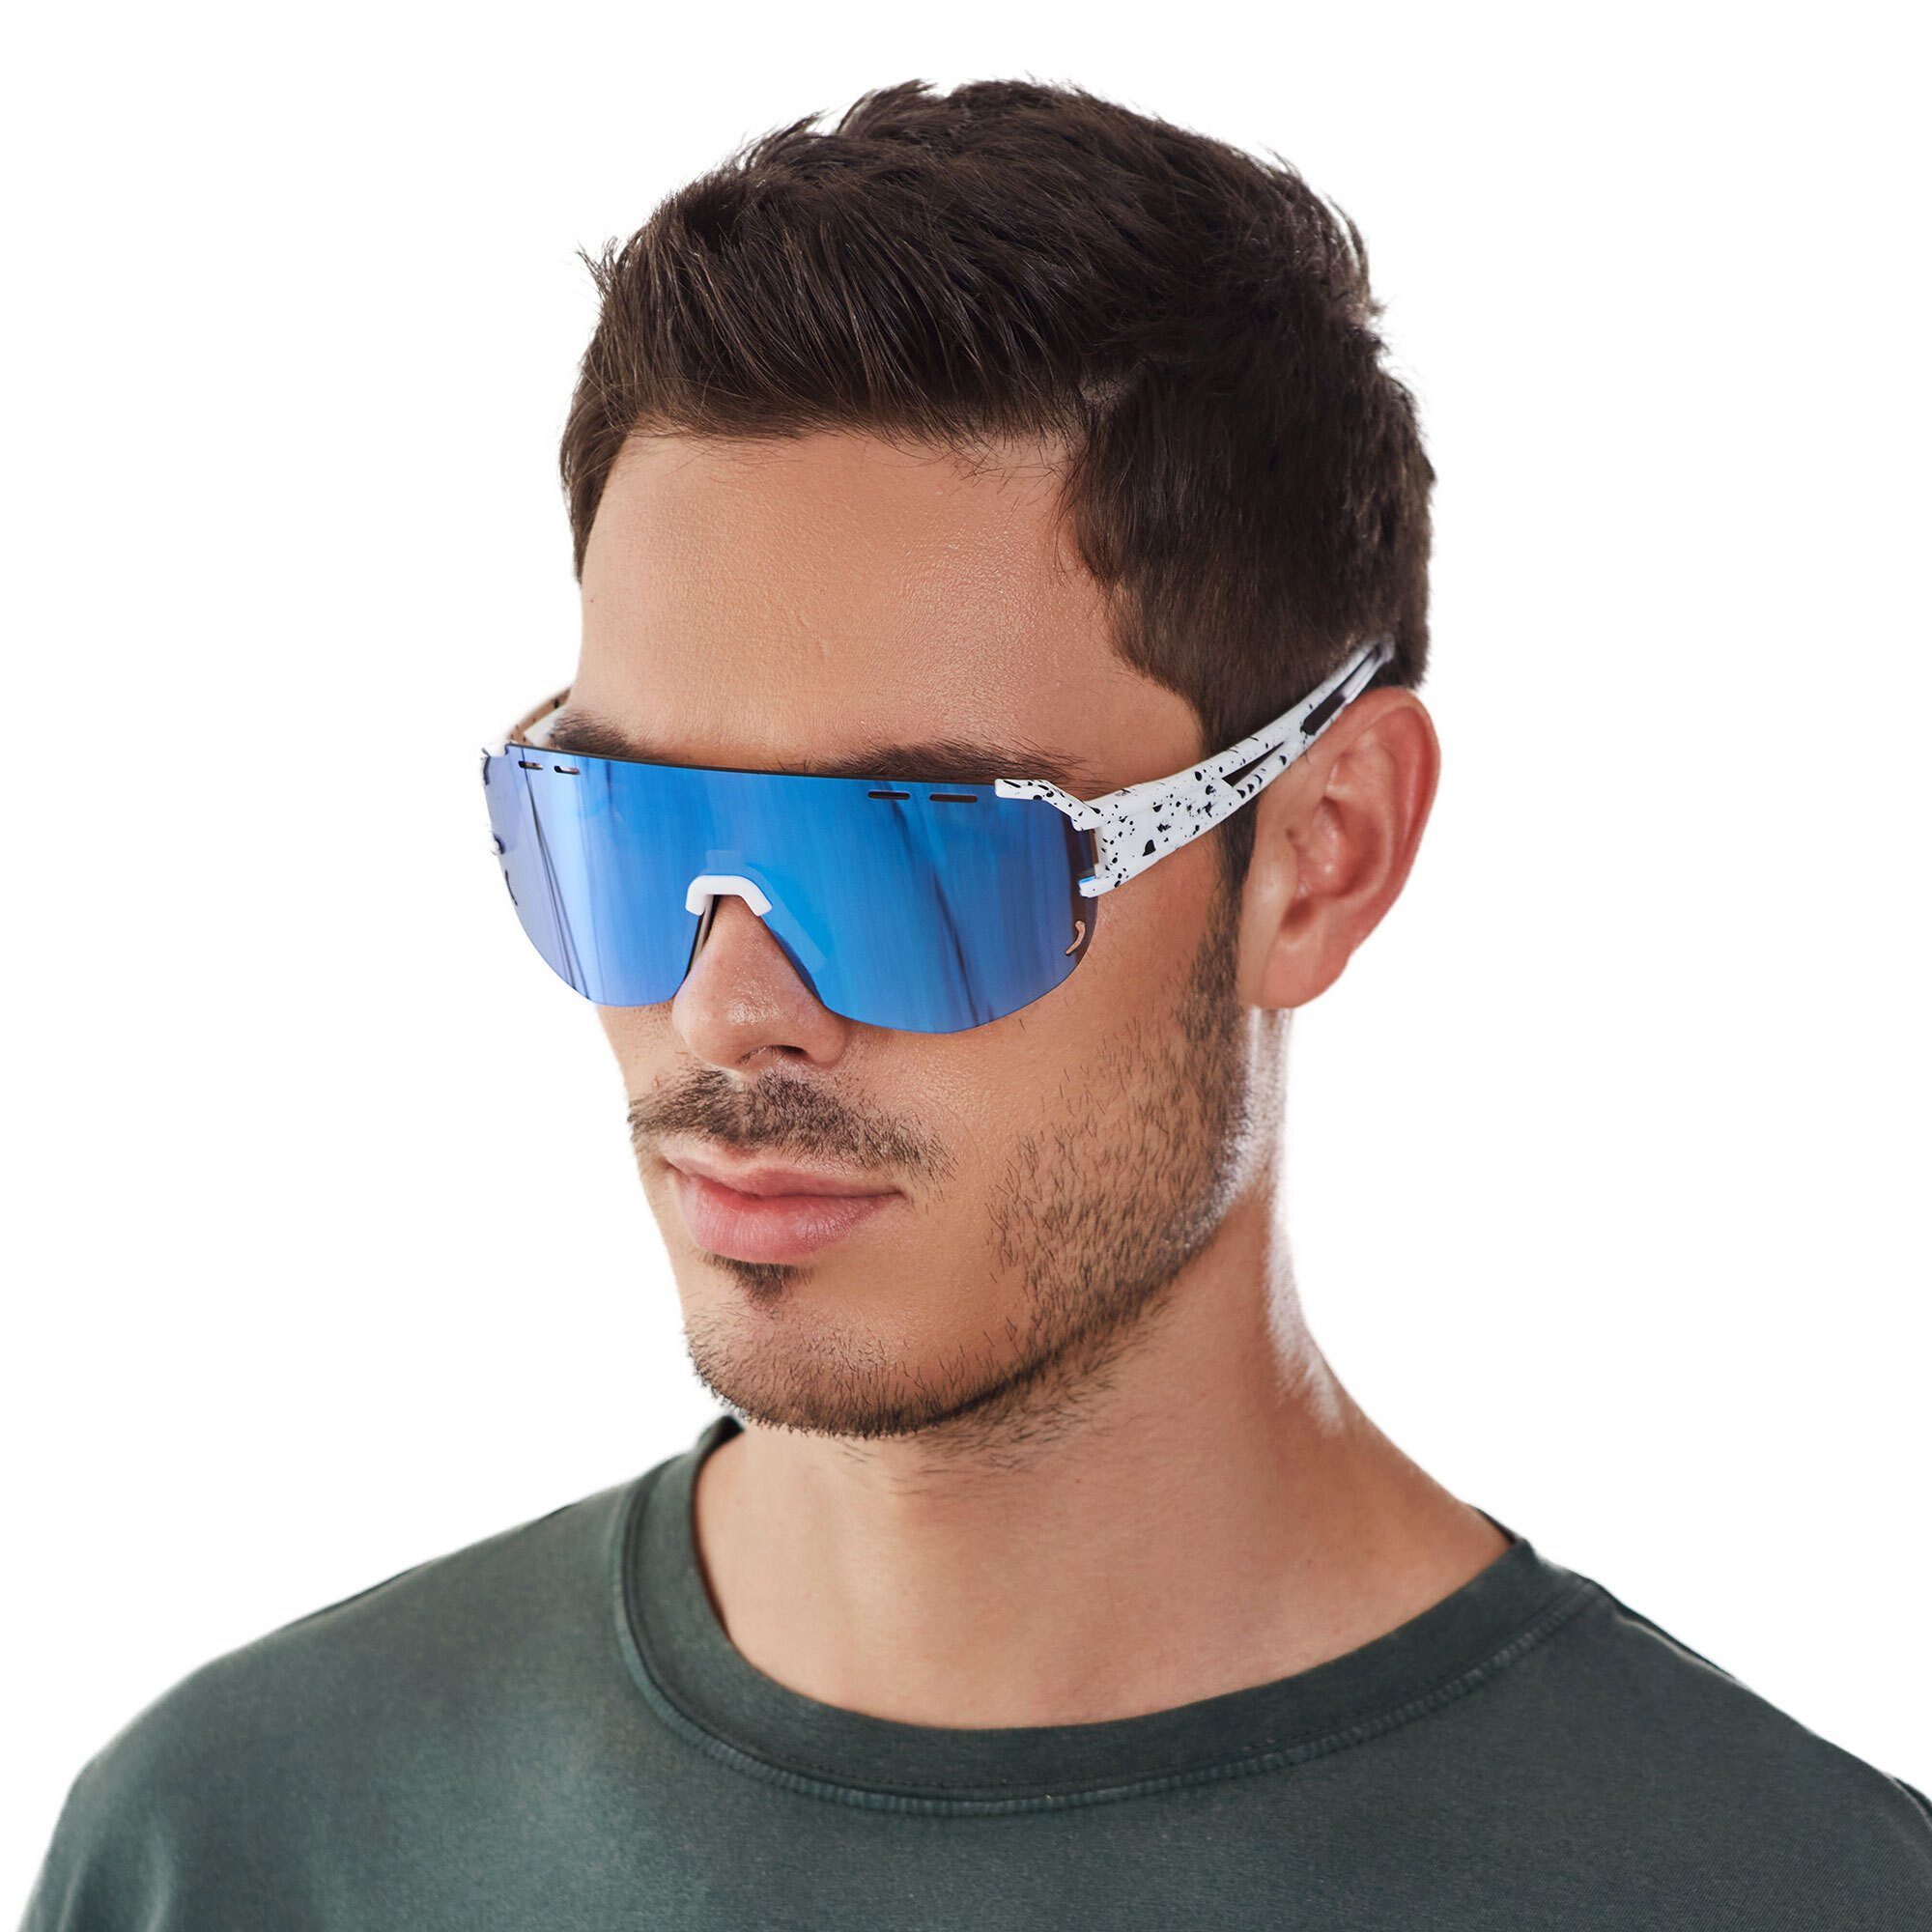 YEAZ Sportbrille SUNGLOW sport-sonnenbrille weiß/blau, Sport-Sonnenbrille weiß / blau